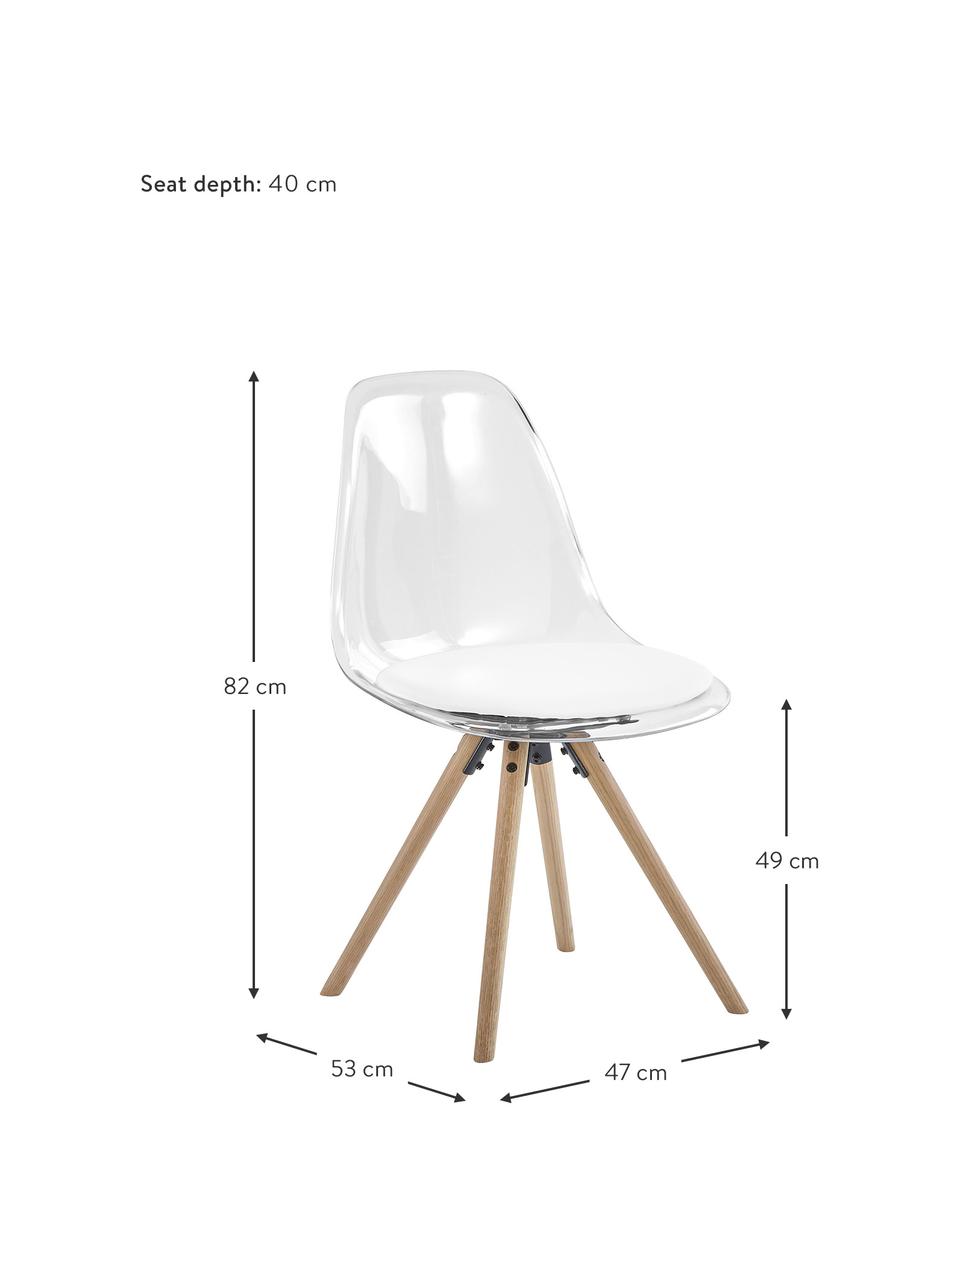 Kunststoff-Stühle Henning, 2 Stück, Sitzschale: Kunststoff, Beine: Eichenholz, geölt, Weiss, Transparent, Eichenholz, B 47 x T 53 cm